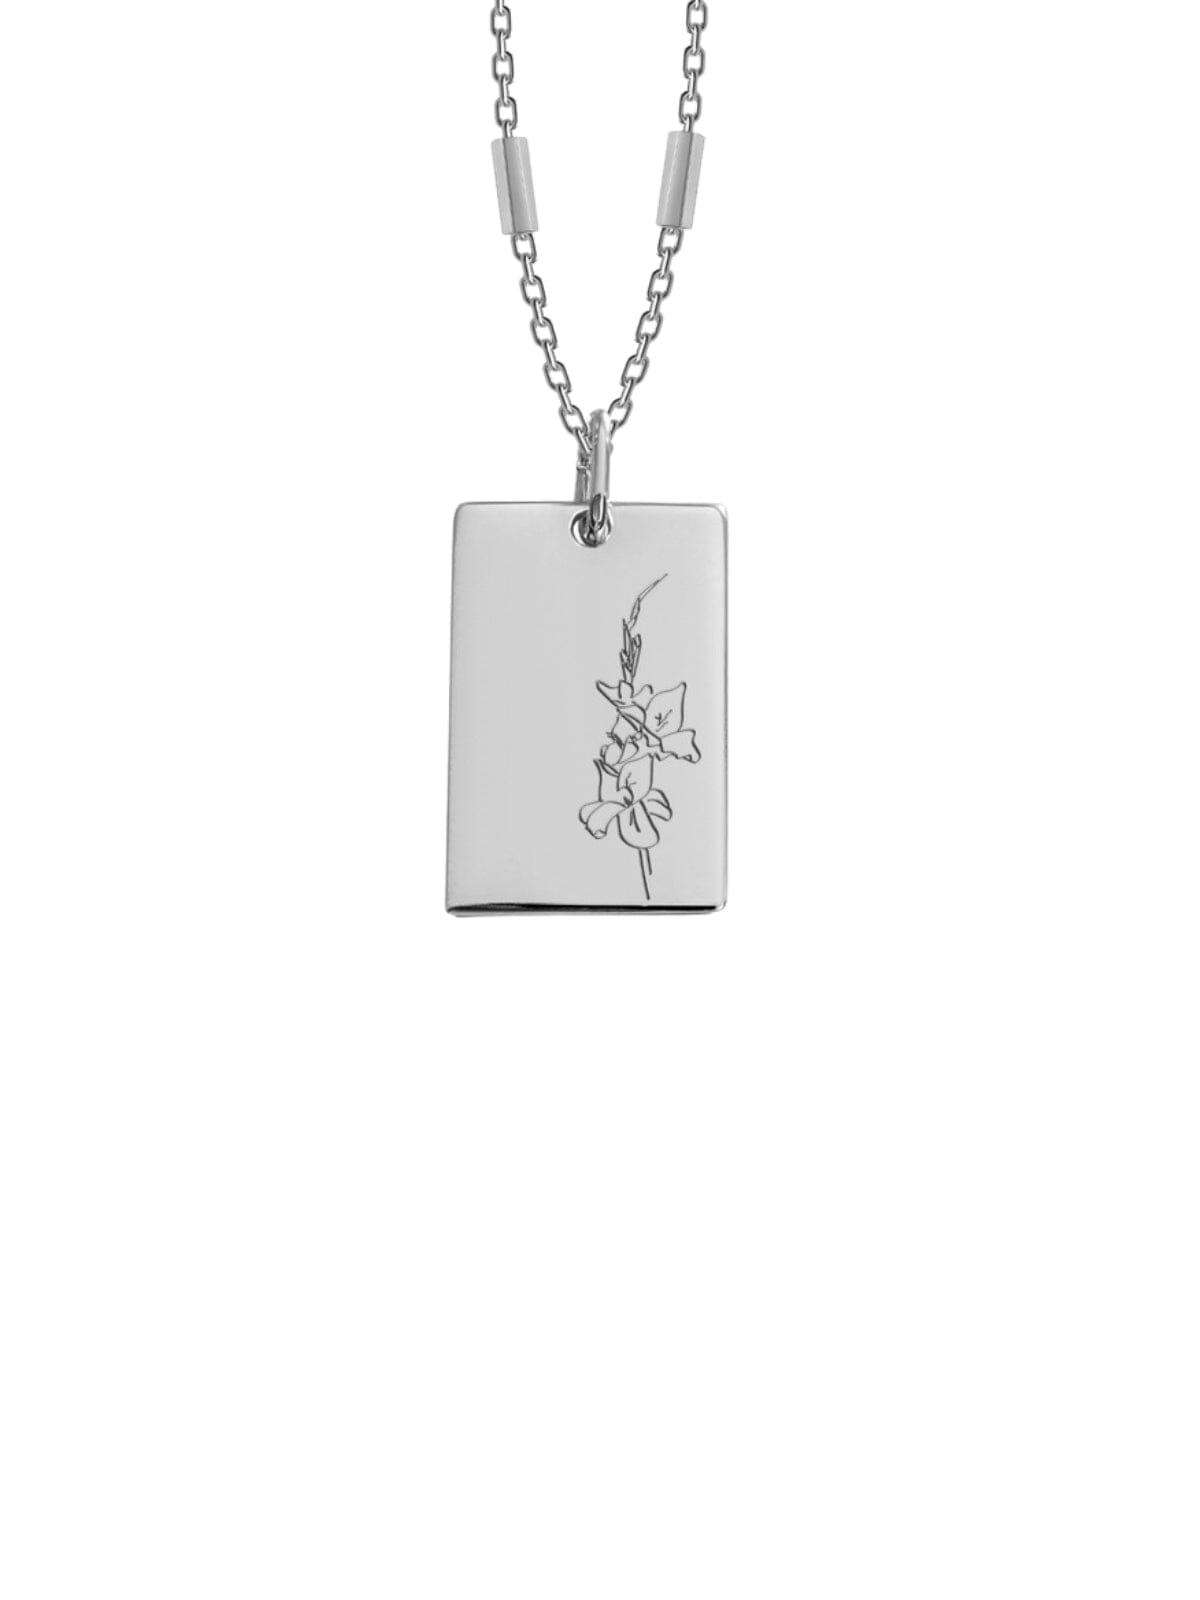 Bianko | Birth Flower Necklace - August -Silver | Perlu